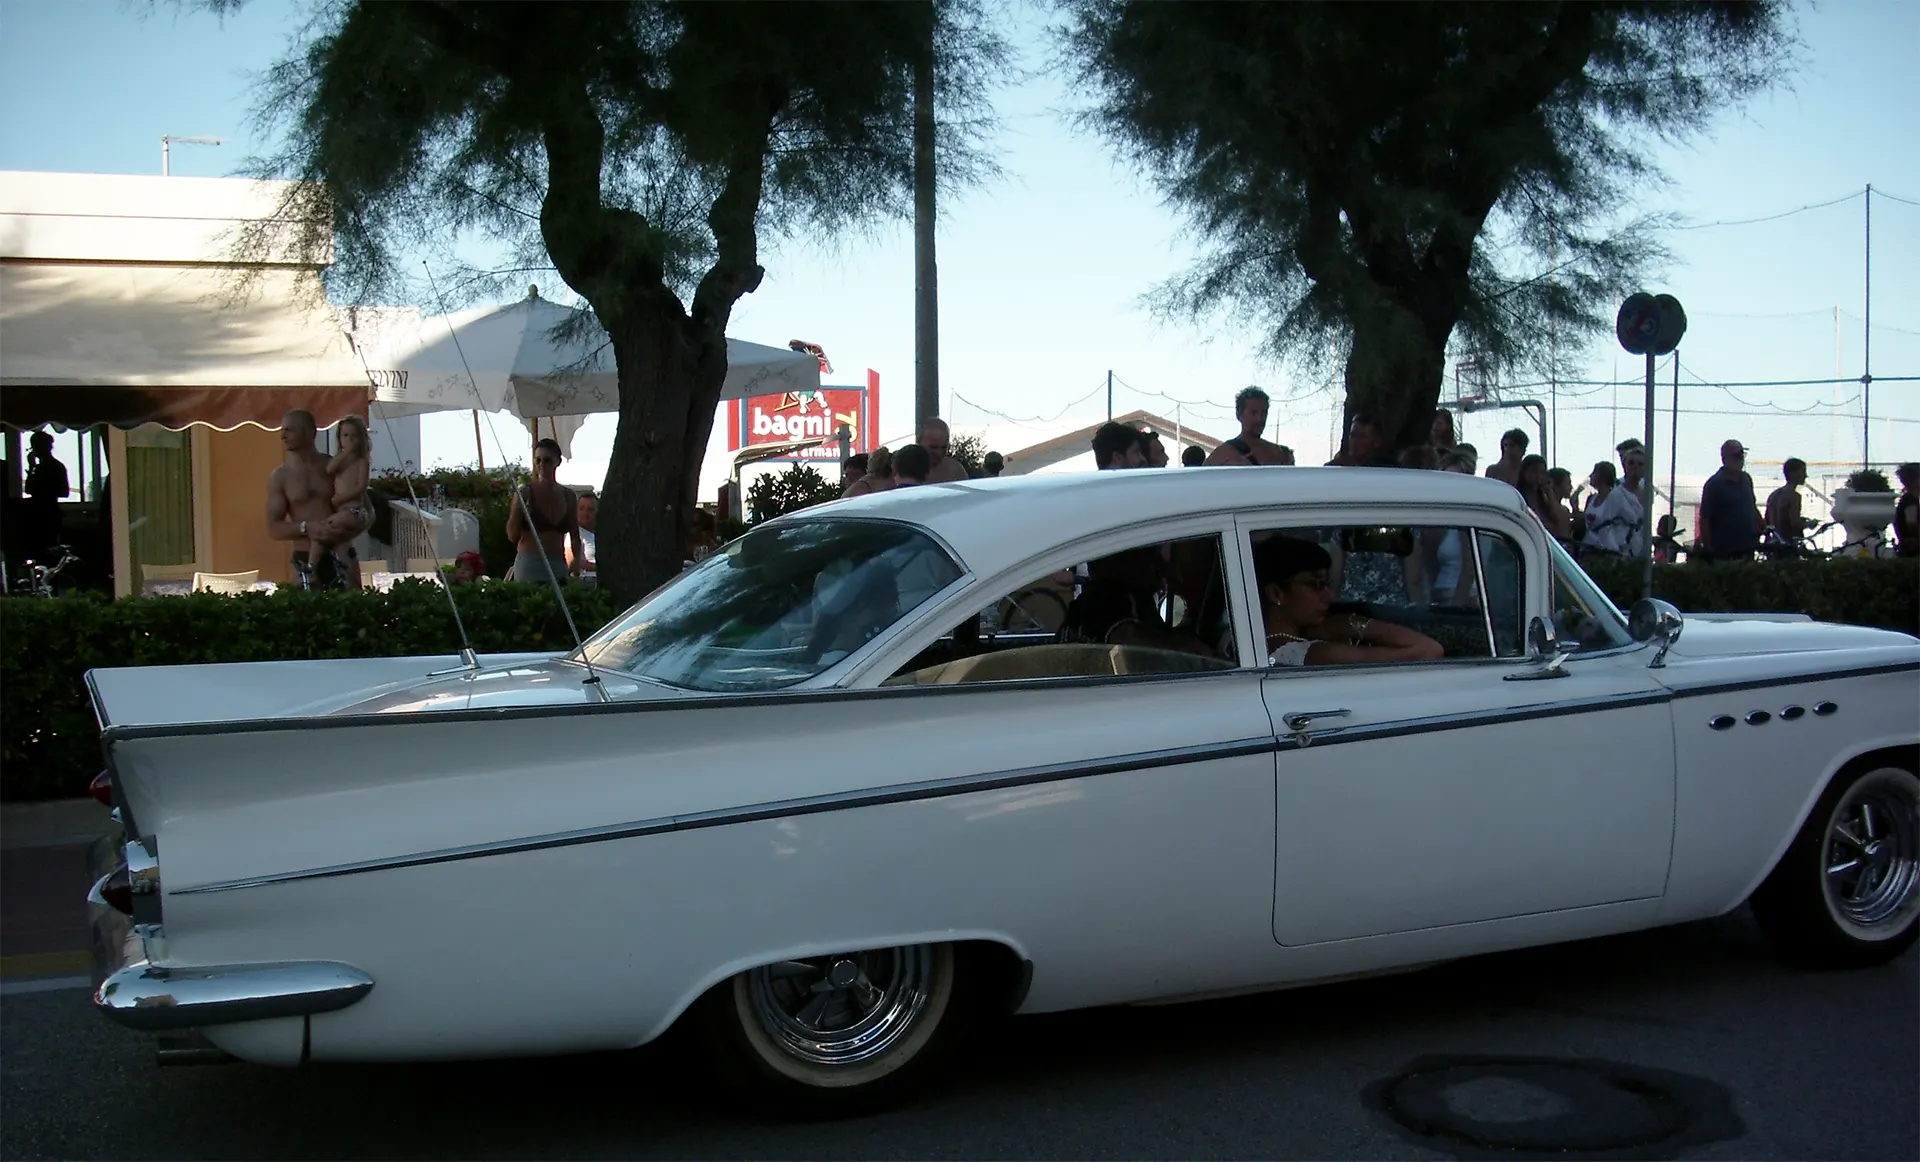 Auto d'epoca Buick del 1959 davanti ai Bagni 79